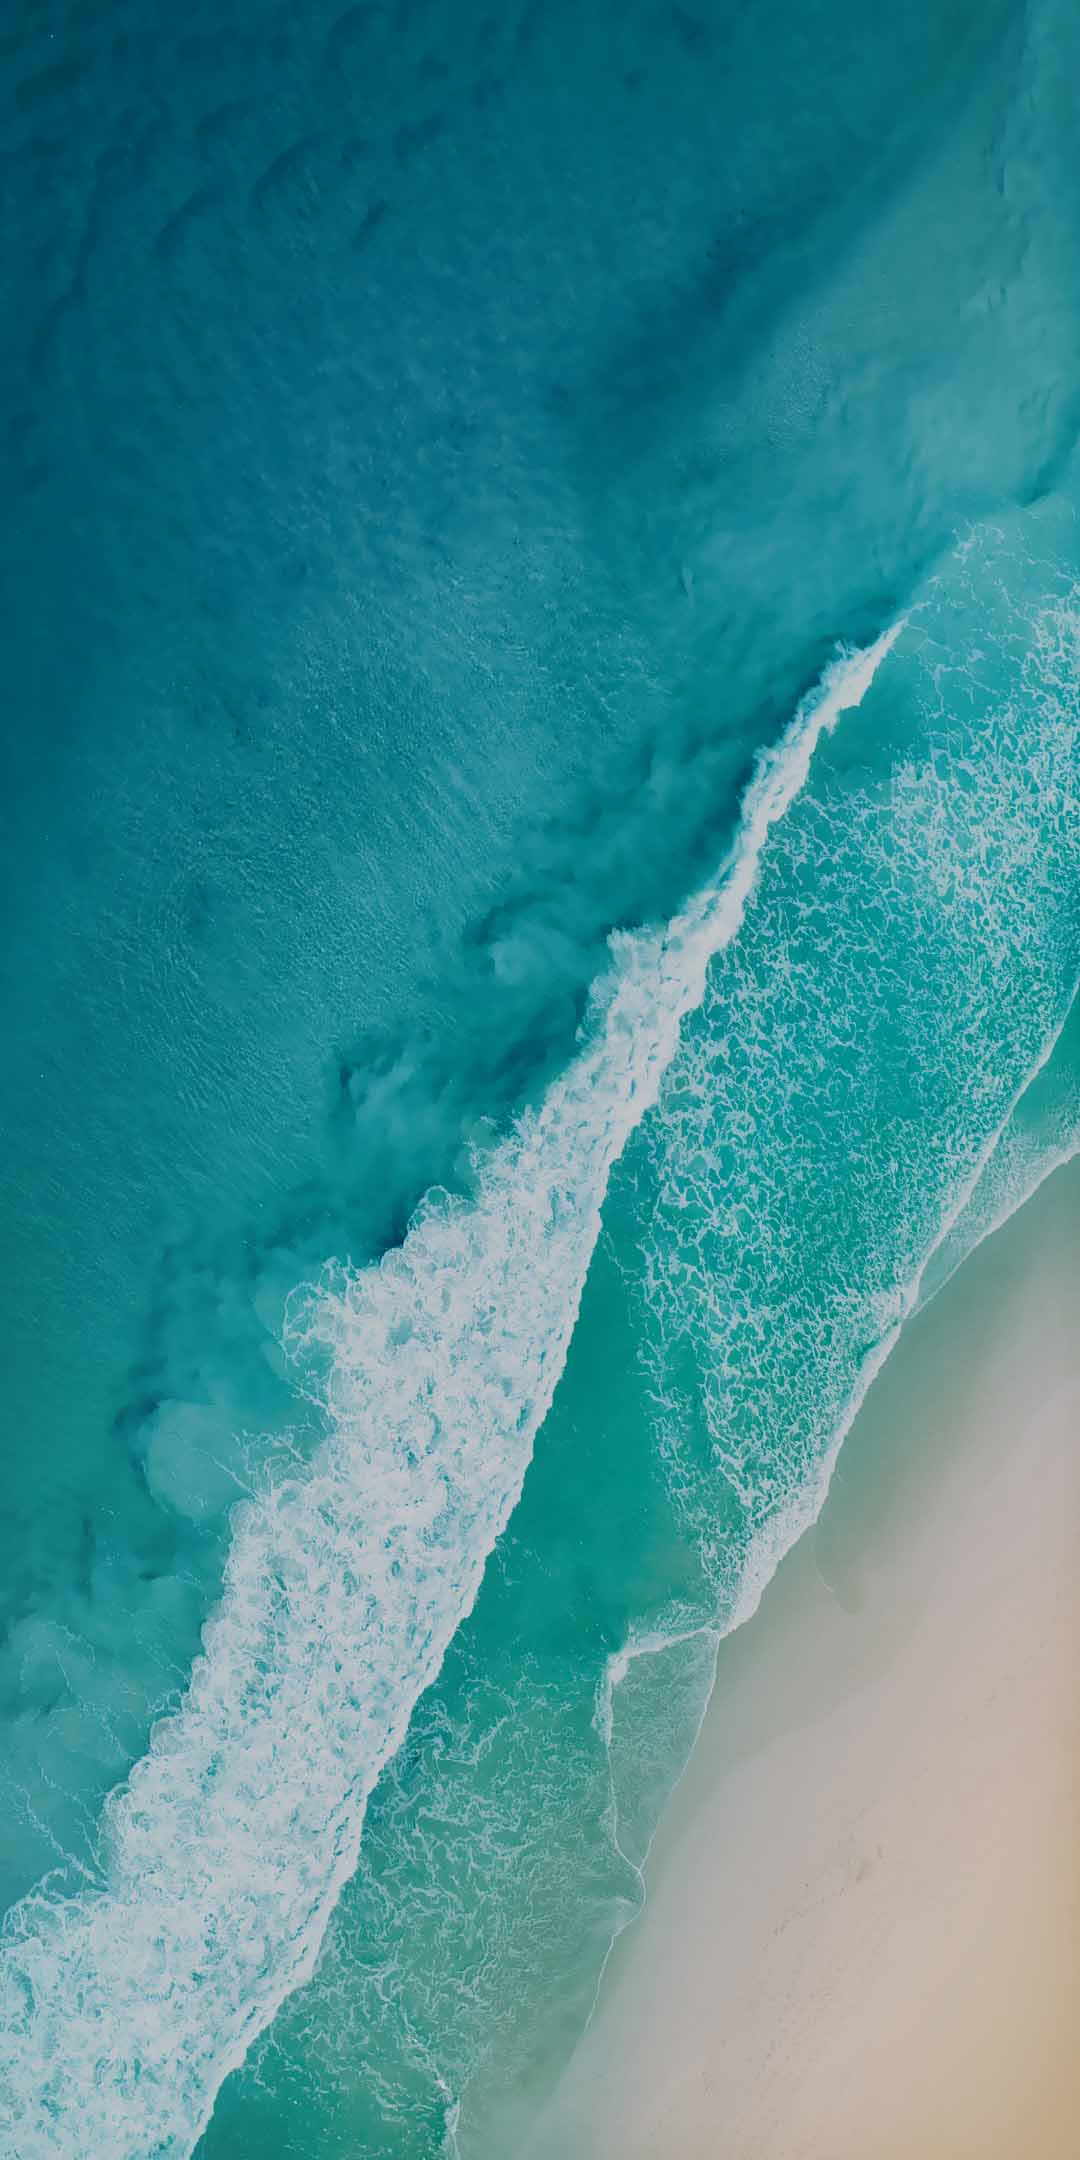 téléchargement d'image de fond d'écran,aqua,l'eau,bleu,turquoise,vague